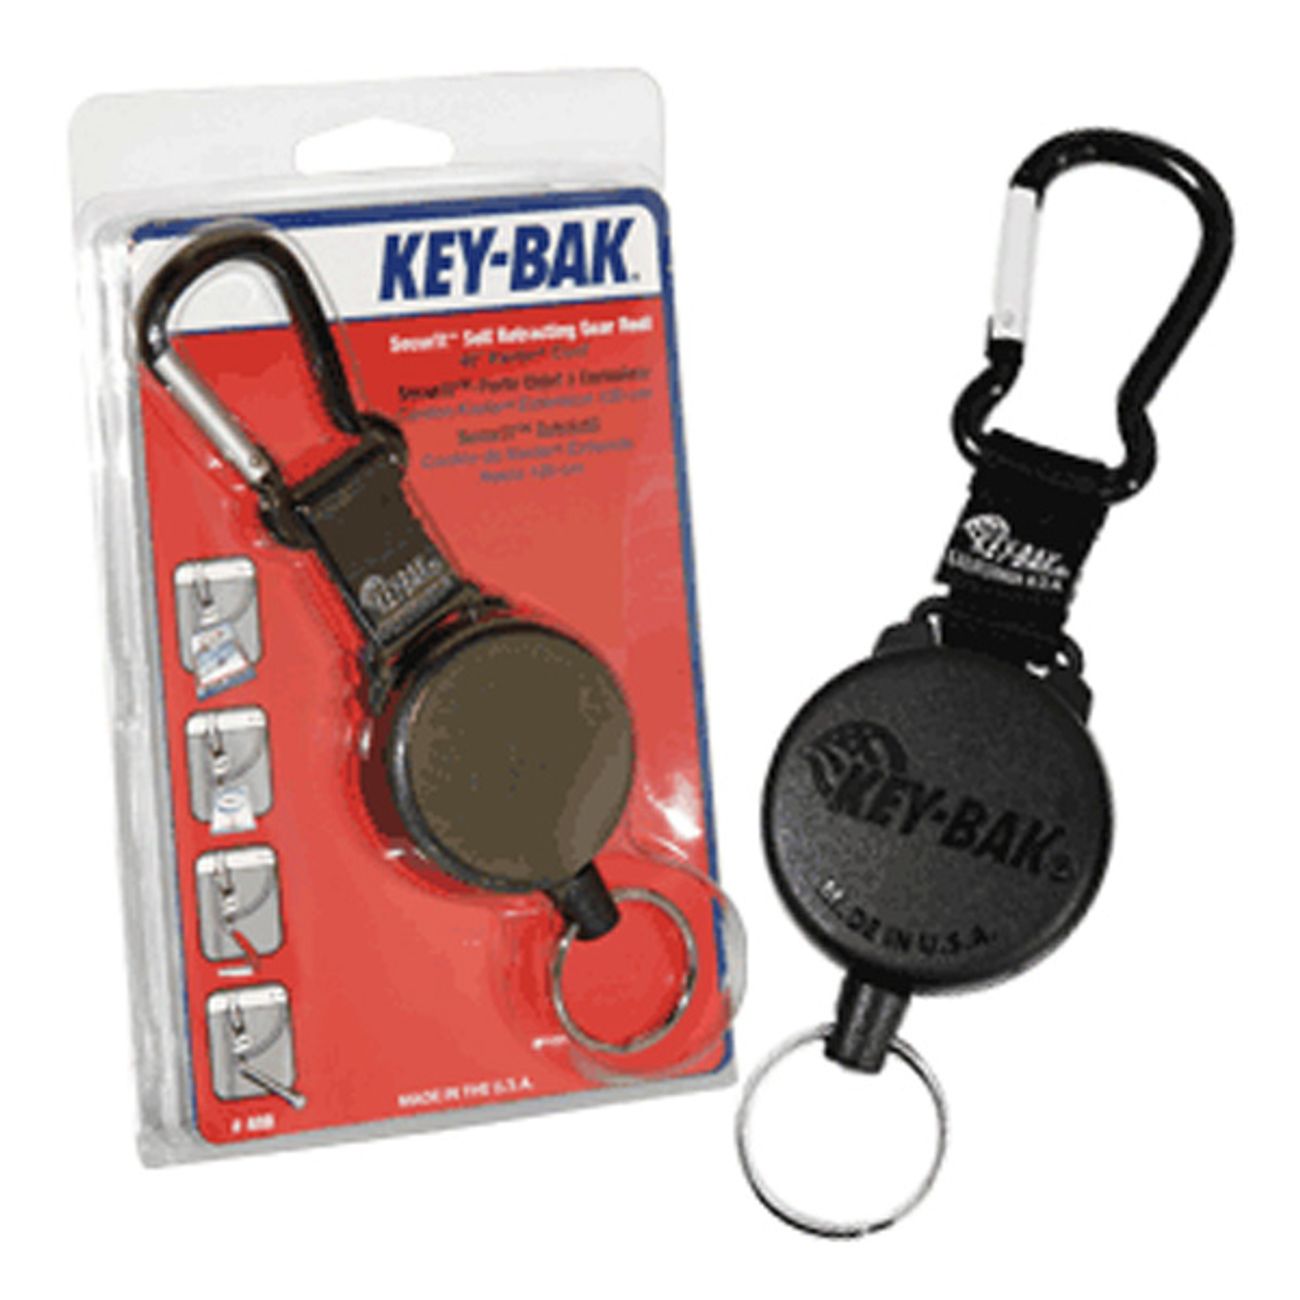 key-bak-nyckelhallare-4